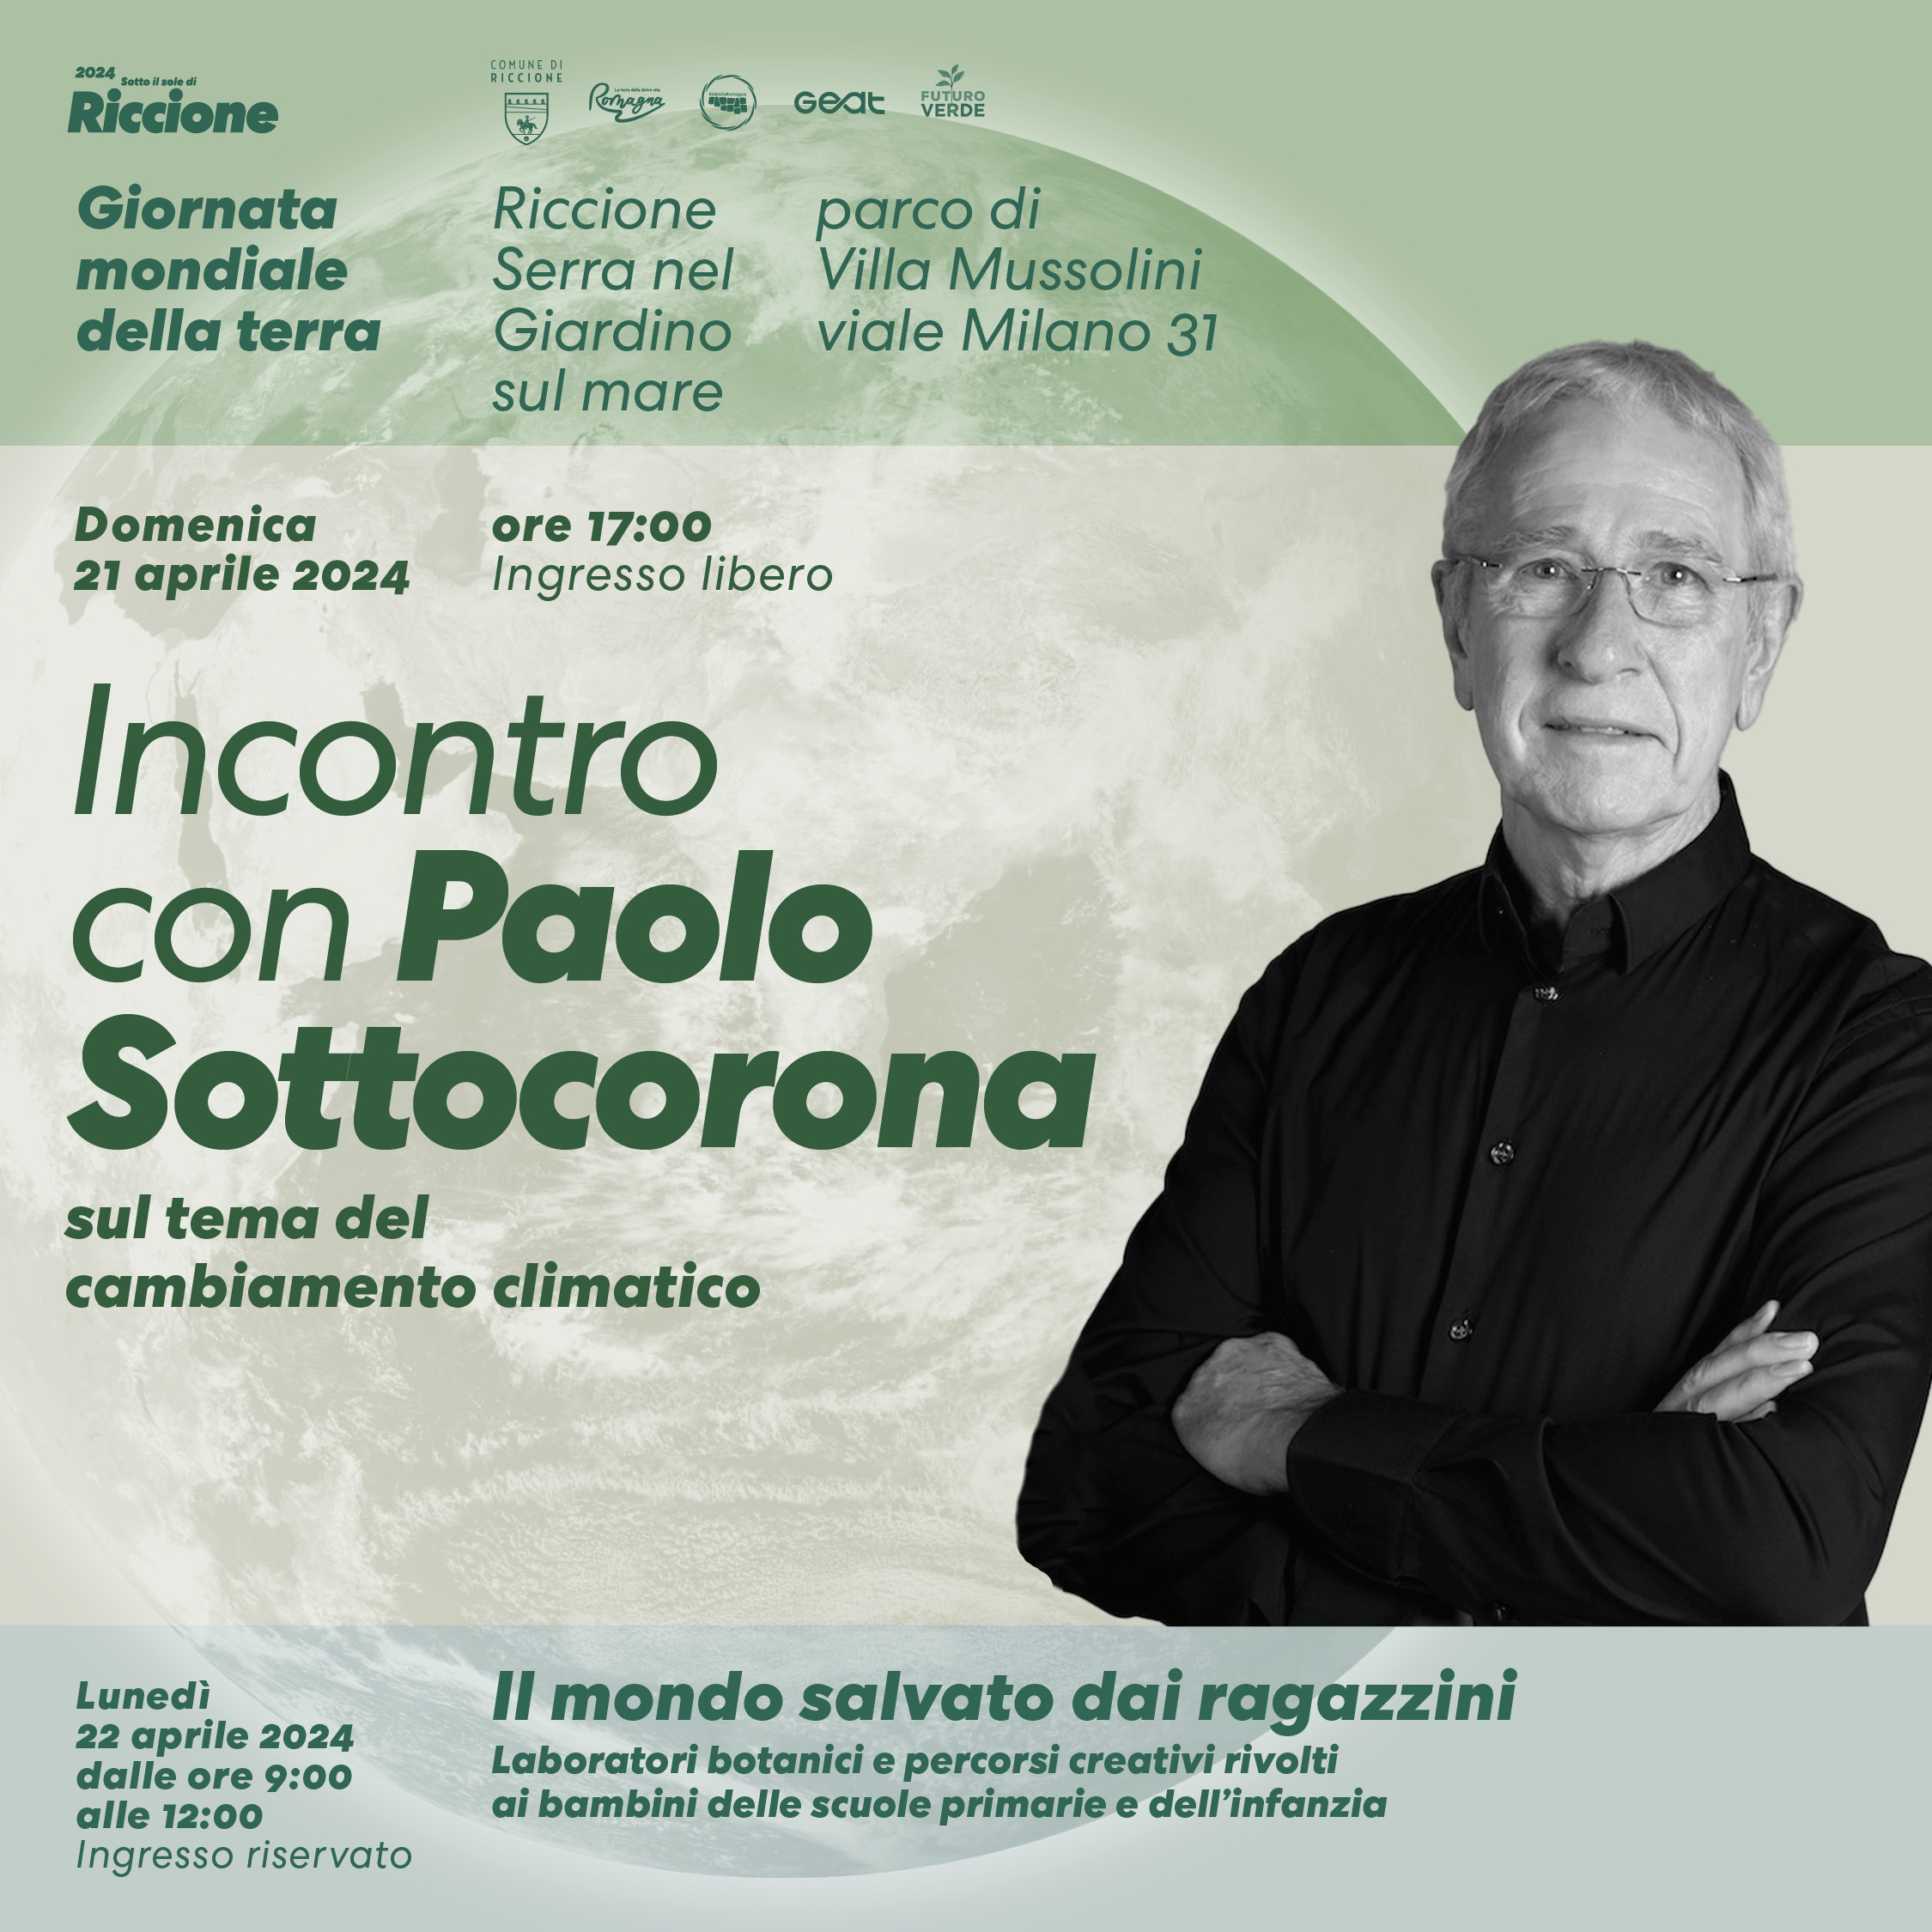 Paolo Sottocorona a Riccione per la Giornata mondiale della Terra  Il meteorologo, noto volto televisivo di La7, parlerà del cambiamento climatico e delle sue conseguenze sulla vita dell’uomo.